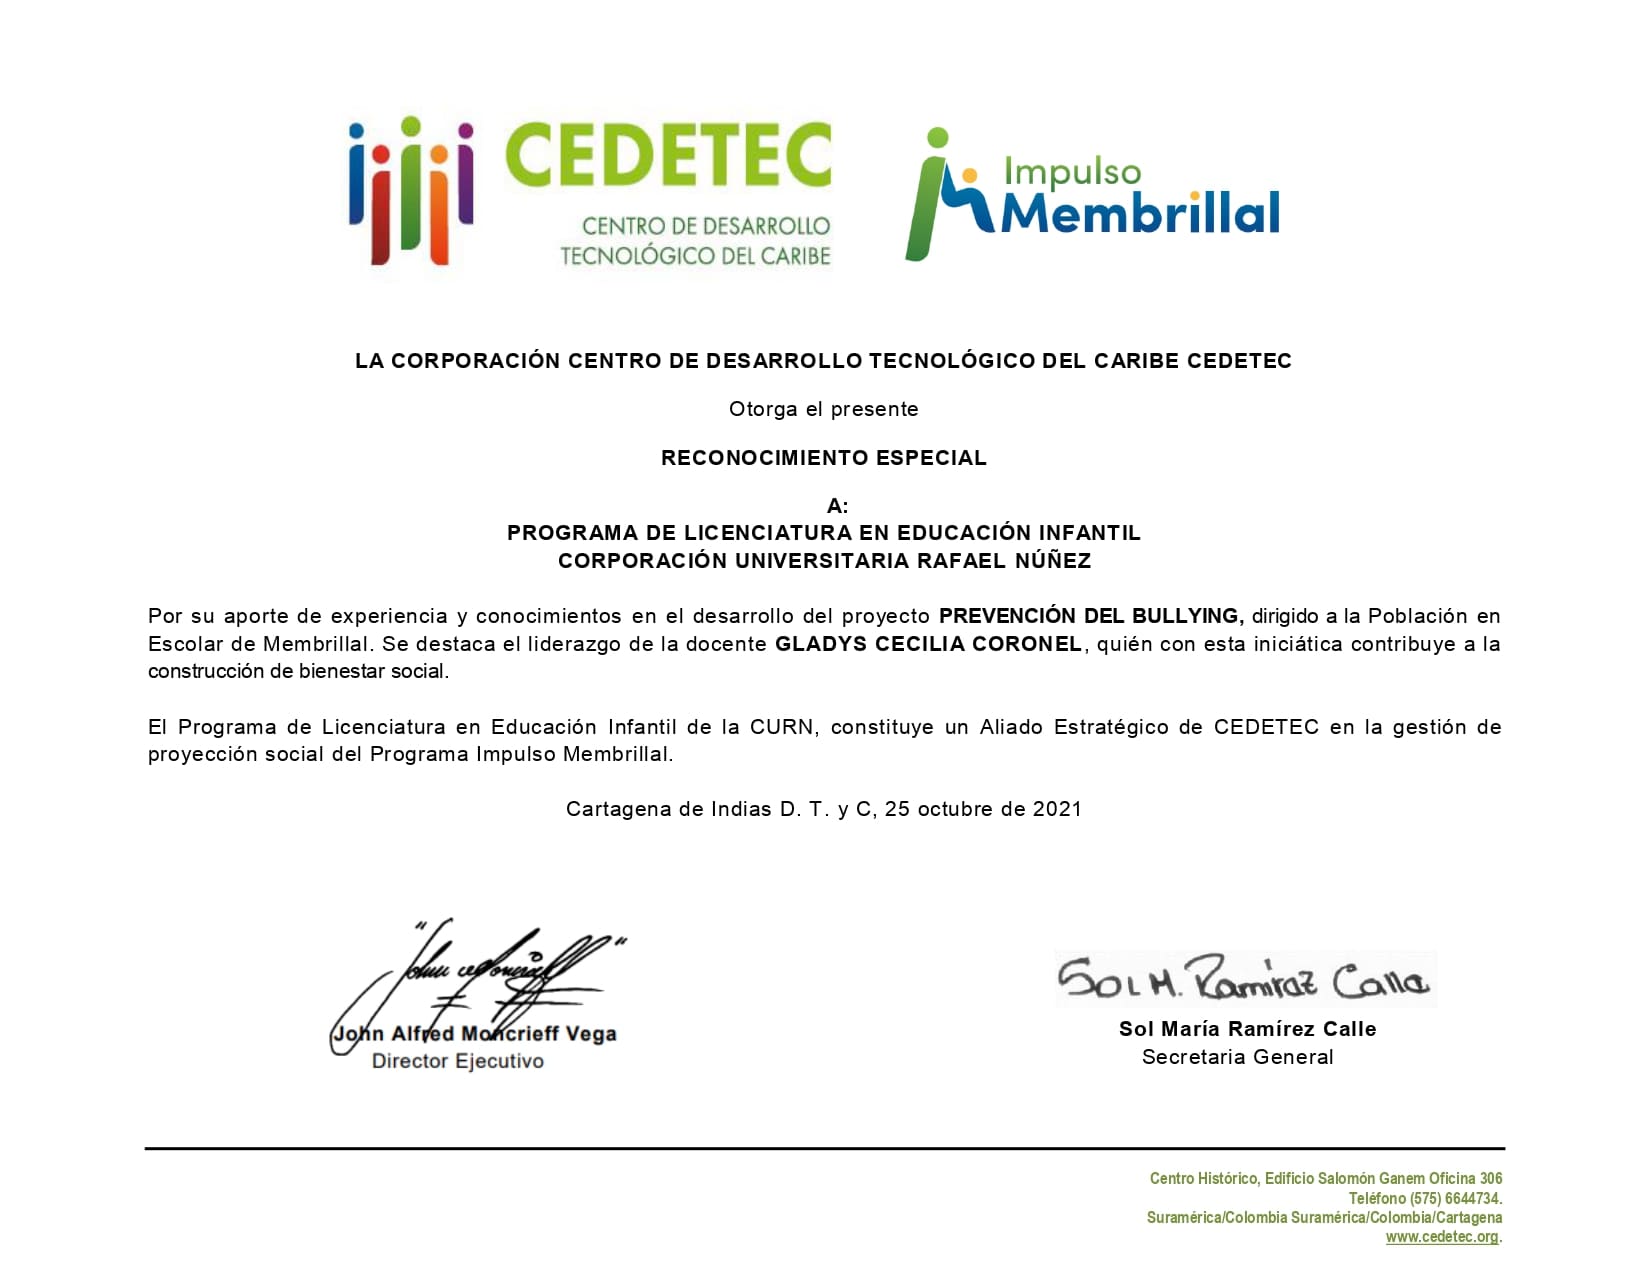 El CEDETEC otorga reconocimiento especial al programa de Licenciatura en Educación Infantil de la CURN